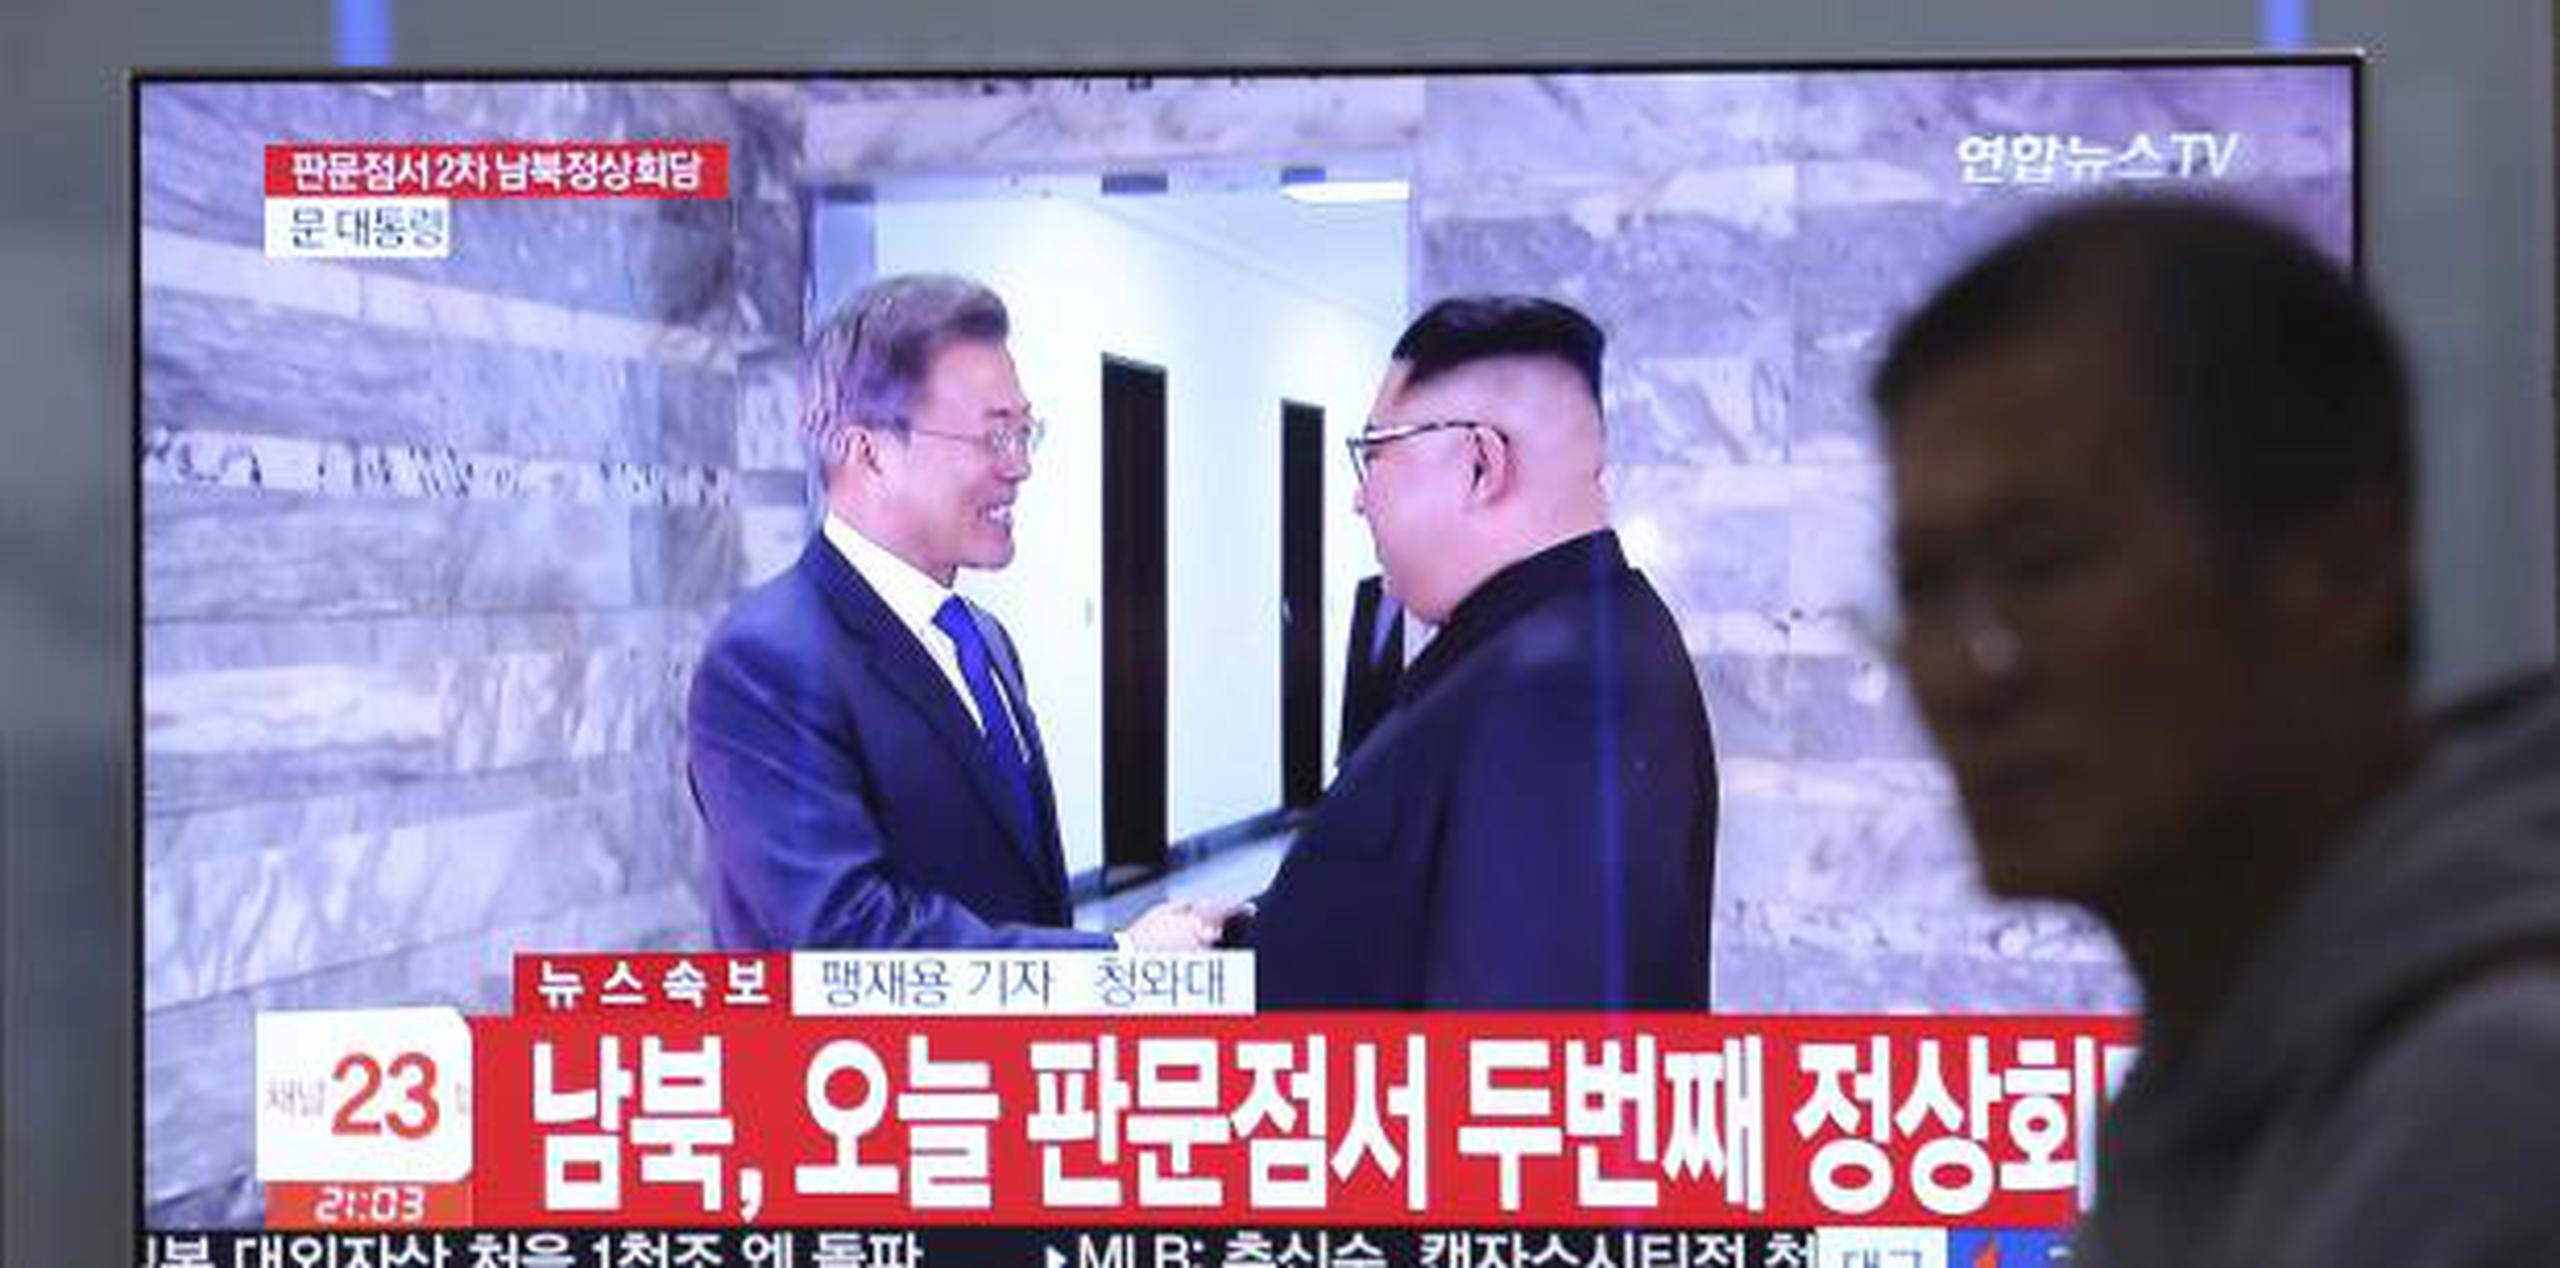 A principios de este mes, Corea del Norte canceló una reunión de alto nivel con Seúl debido a la participación surcoreana en los ejercicios militares que suele realizar con Estados Unidos. (AP)